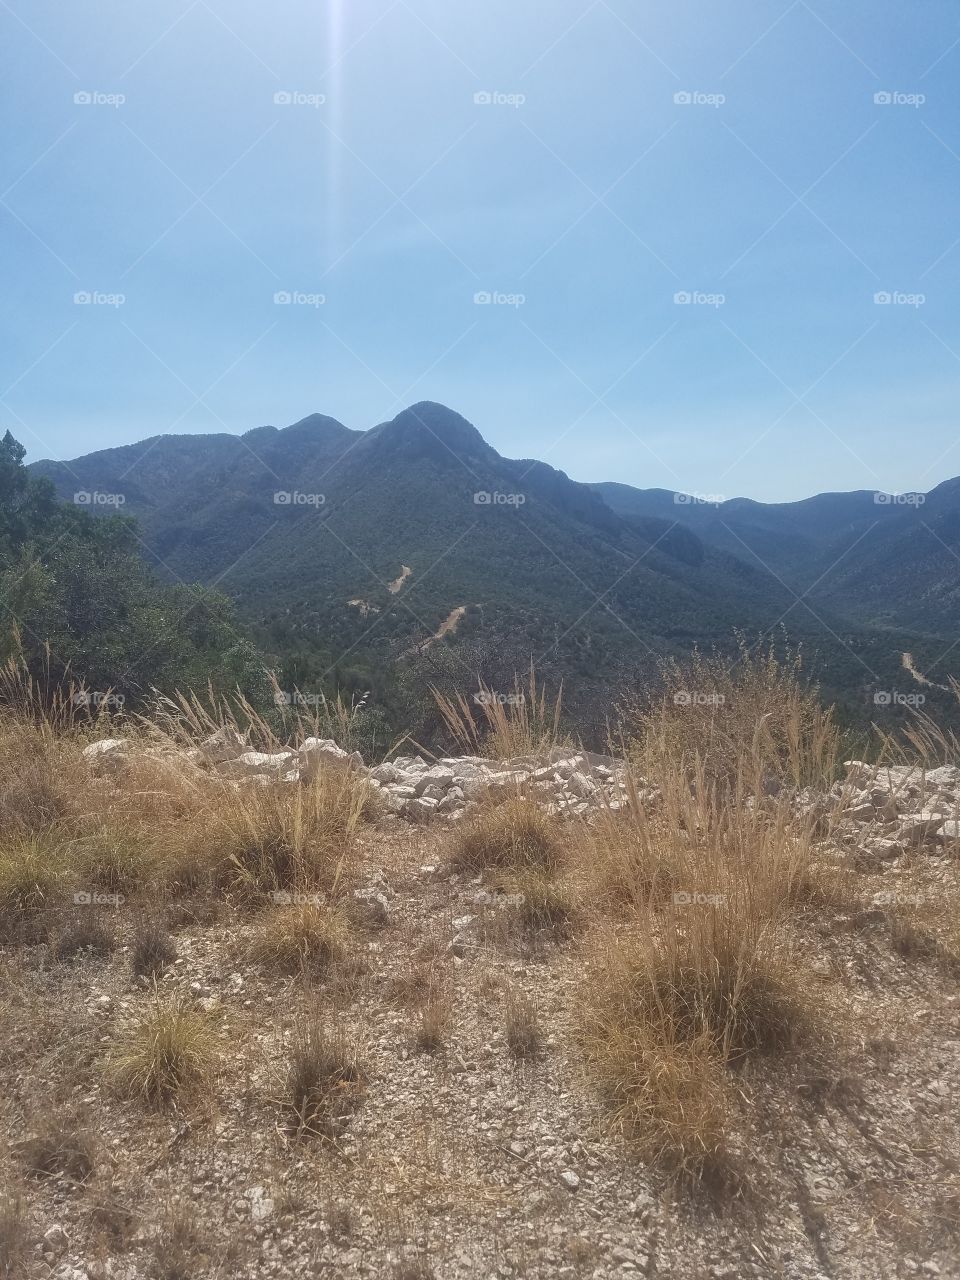 mountains of Sierra vista Arizona